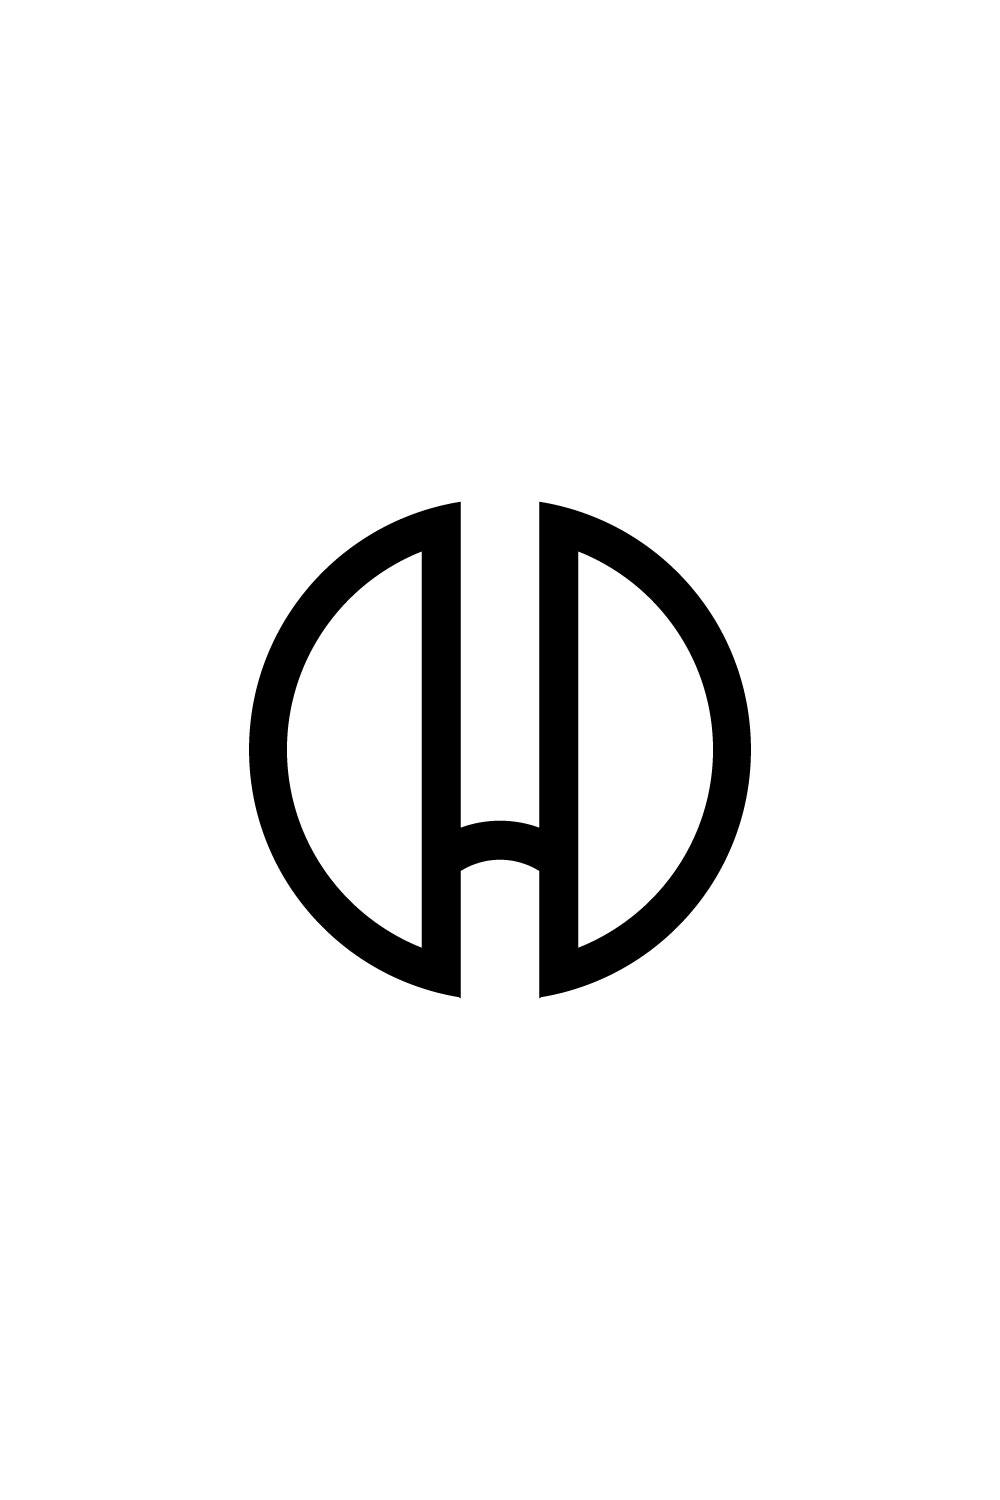 H Letter Logo Design Pinterest image.